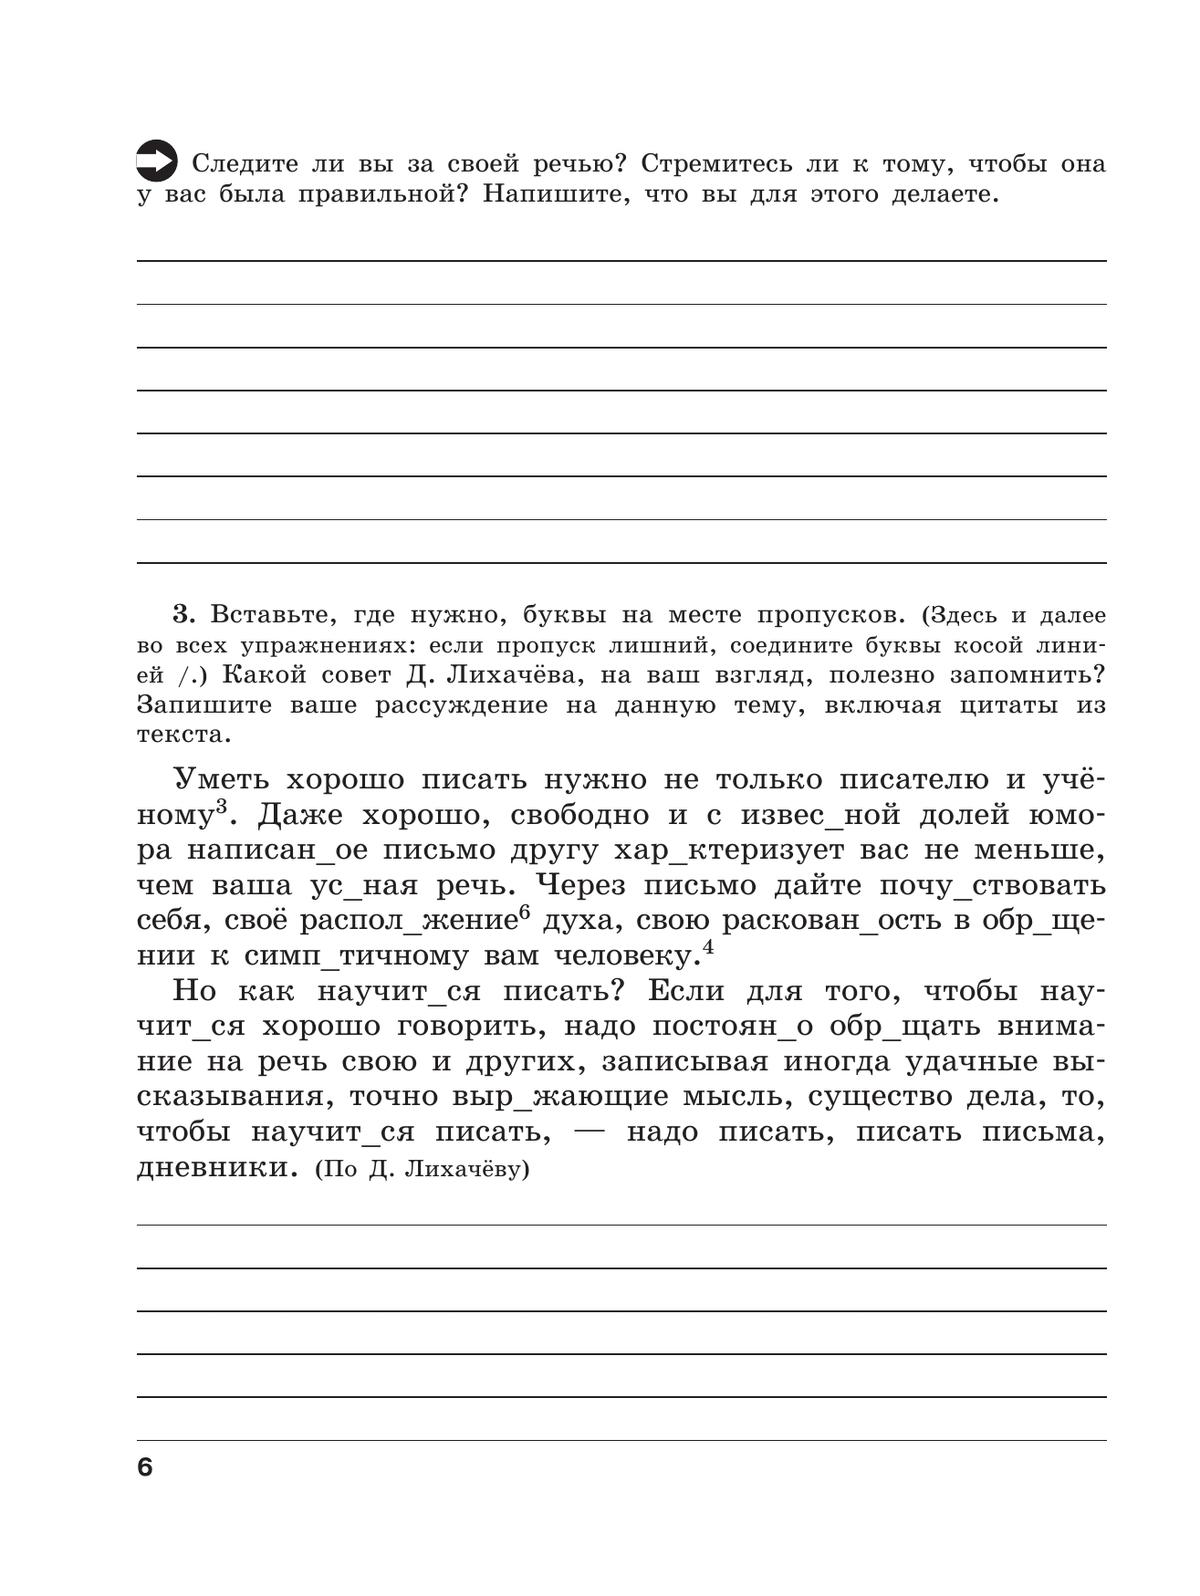 Скорая помощь по русскому языку. Рабочая тетрадь. 9 класс. В 2 ч. Часть 1 2